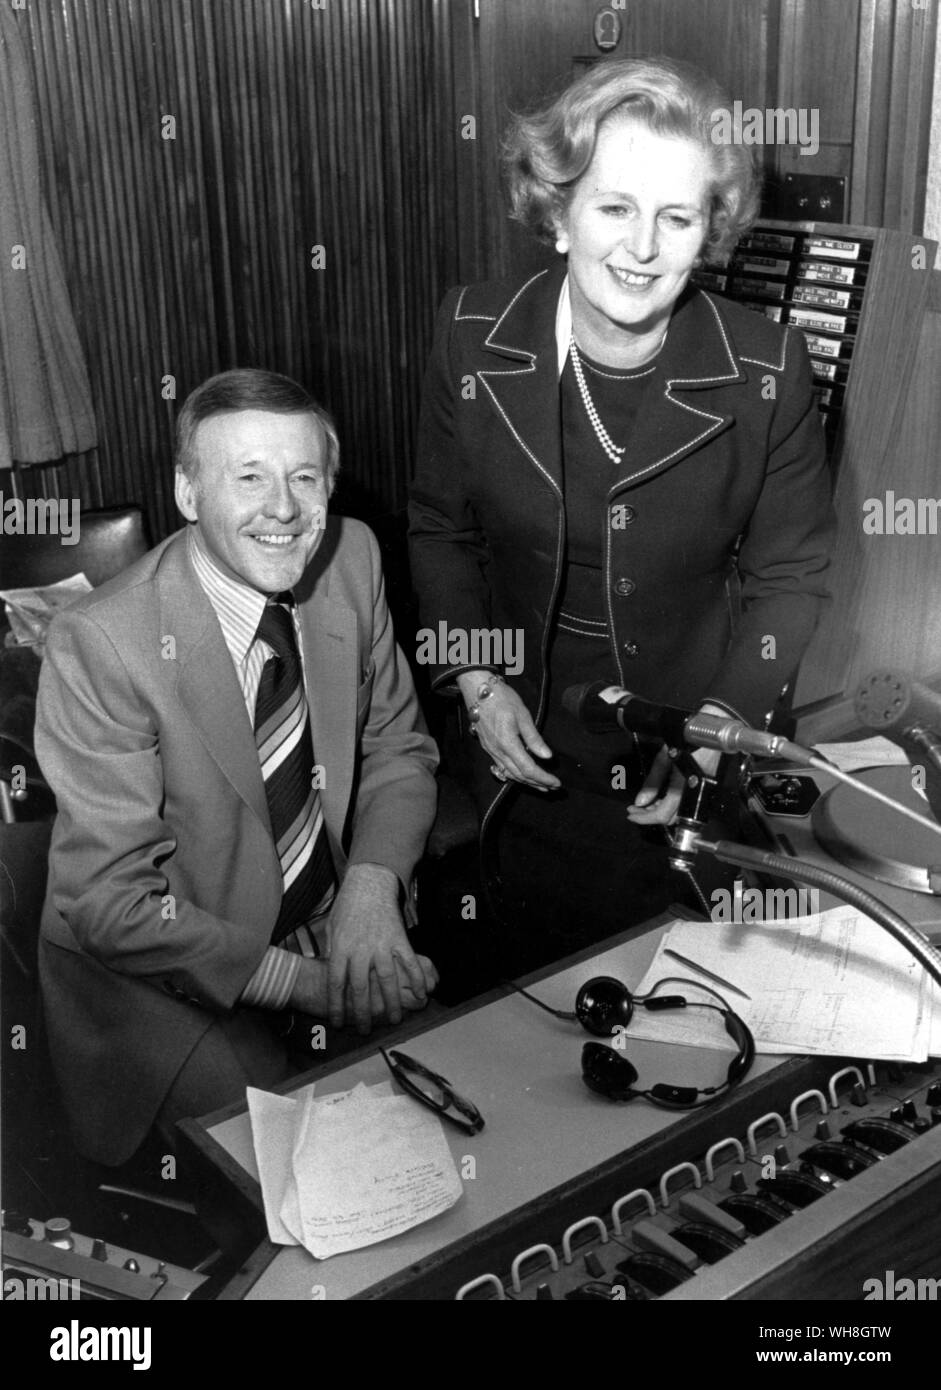 Jimmy Young et Mme Margaret Thatcher en 1979. Margaret Thatcher, la première femme premier ministre en Europe, est l'invité de Jimmy Young's BBC Radio 2 programme.. . Banque D'Images